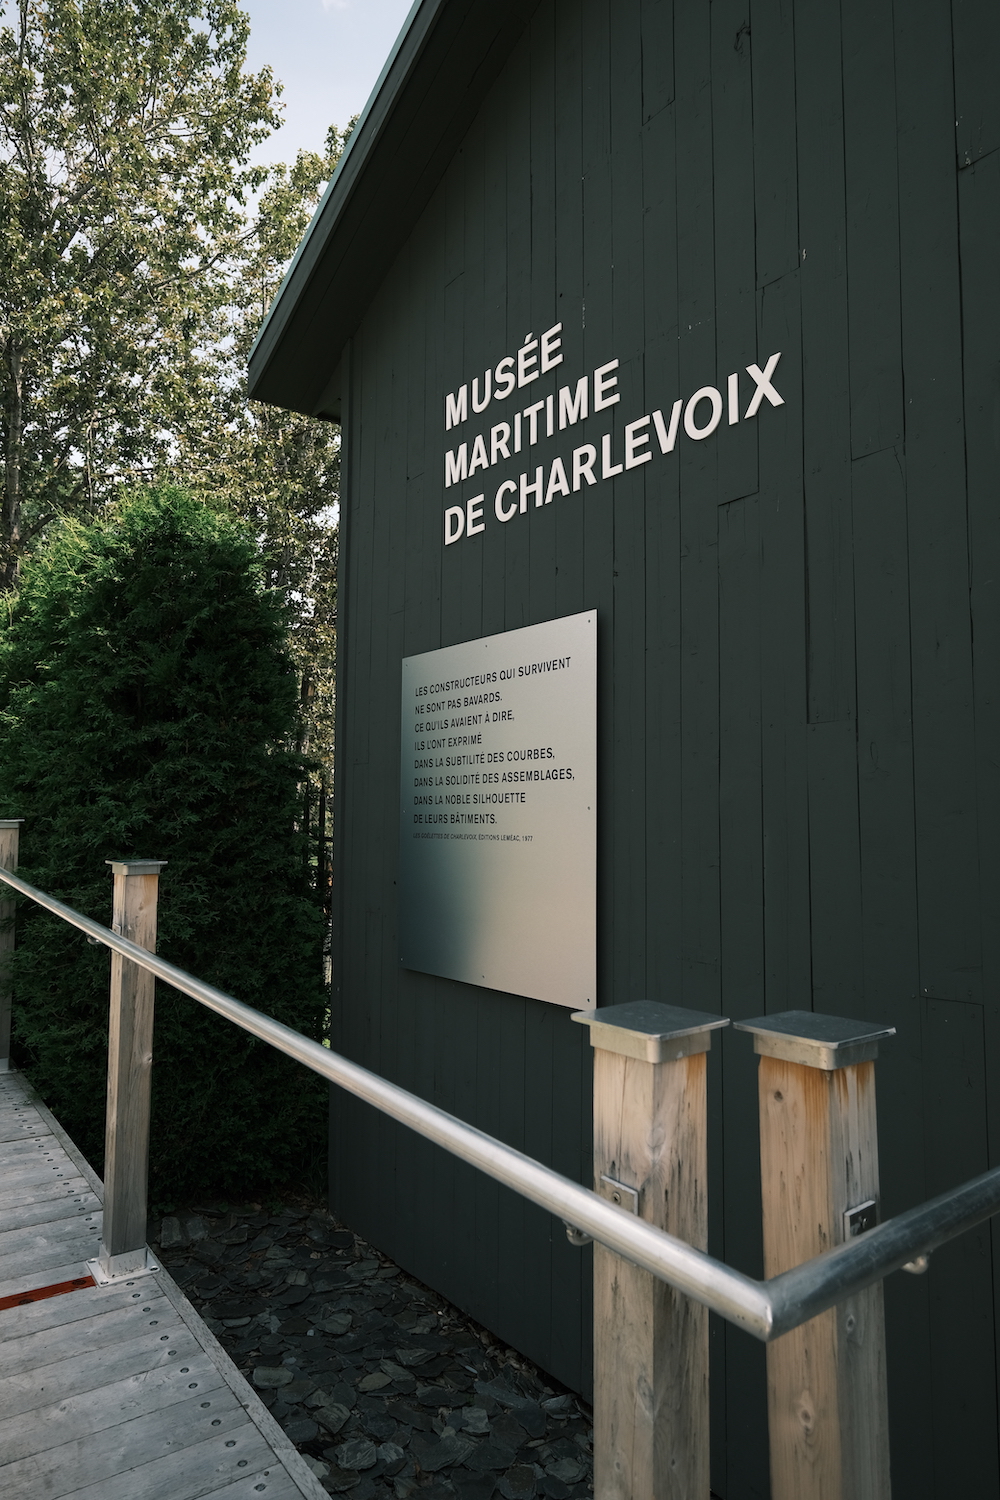 musee maritime de charlevoix - van charlevoix